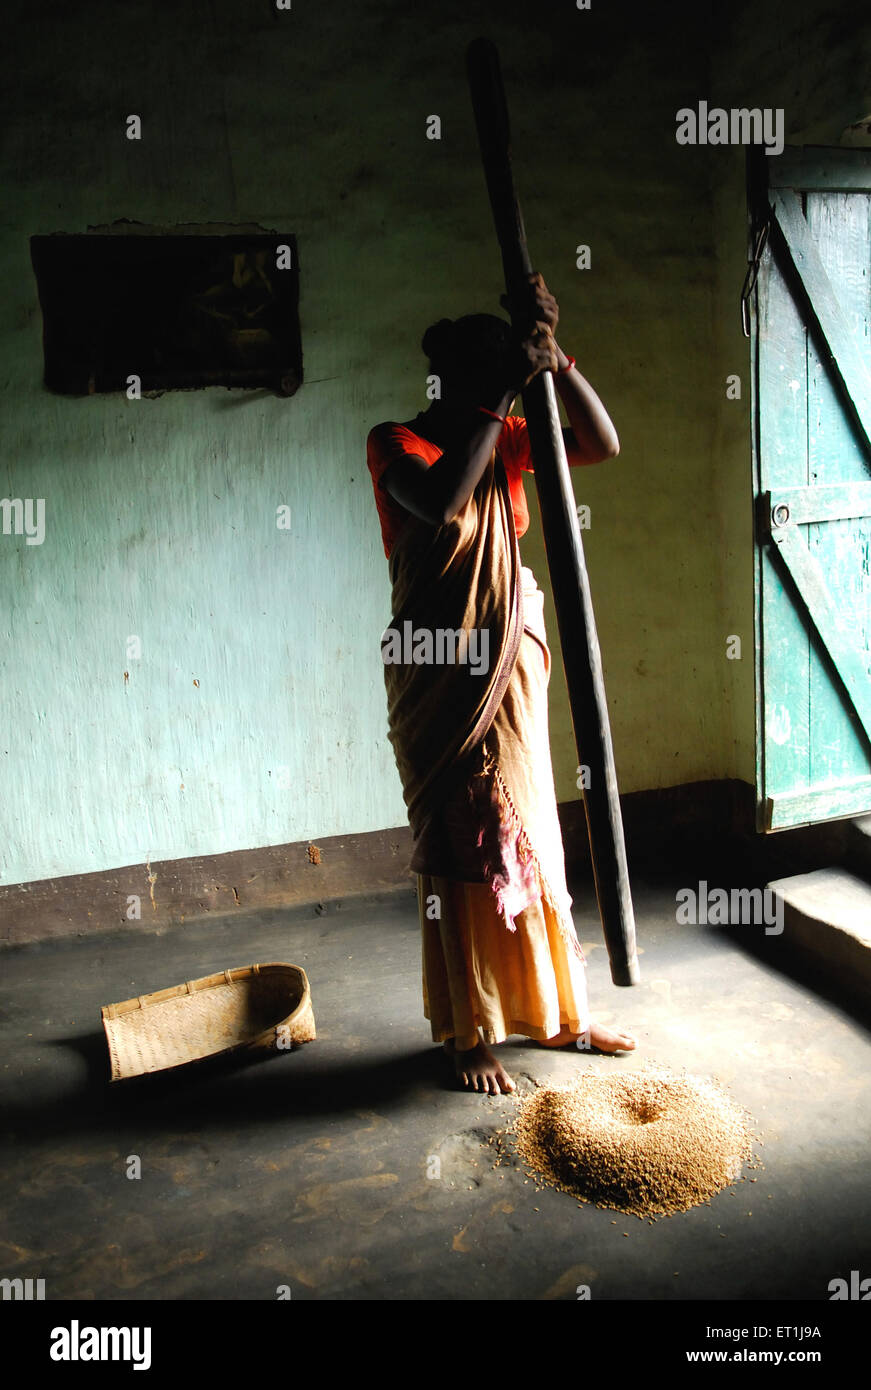 Femme écrasant des grains, tribu Ho, peuple tribal, Chakradharpur, Singhbhum Ouest, Jharkhet, Inde, Asie Banque D'Images